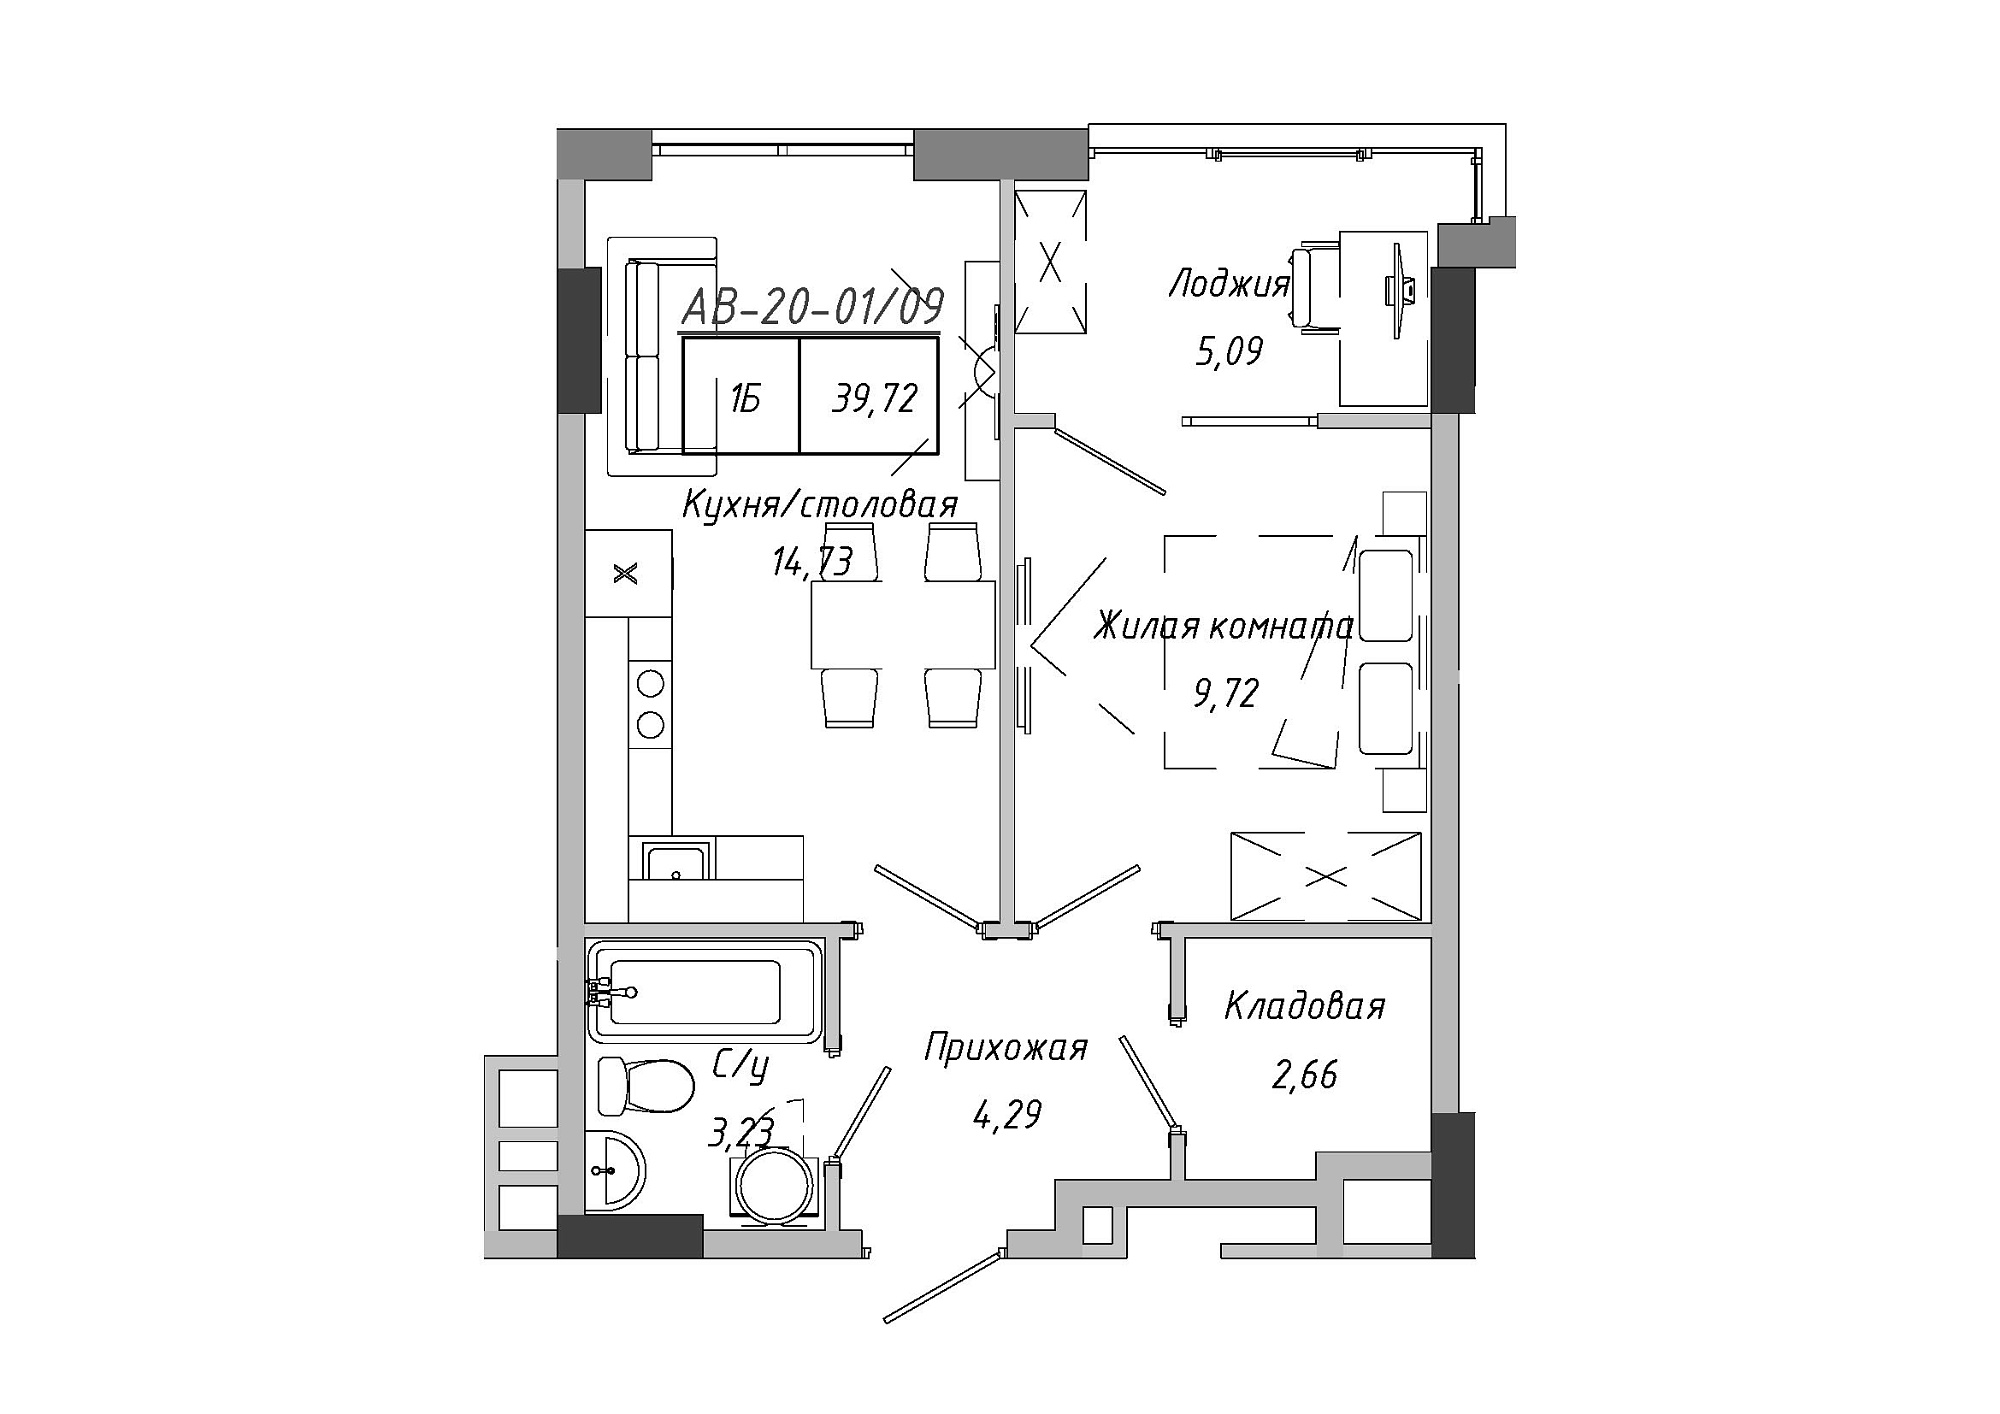 Планування 1-к квартира площею 39.72м2, AB-20-01/00009.